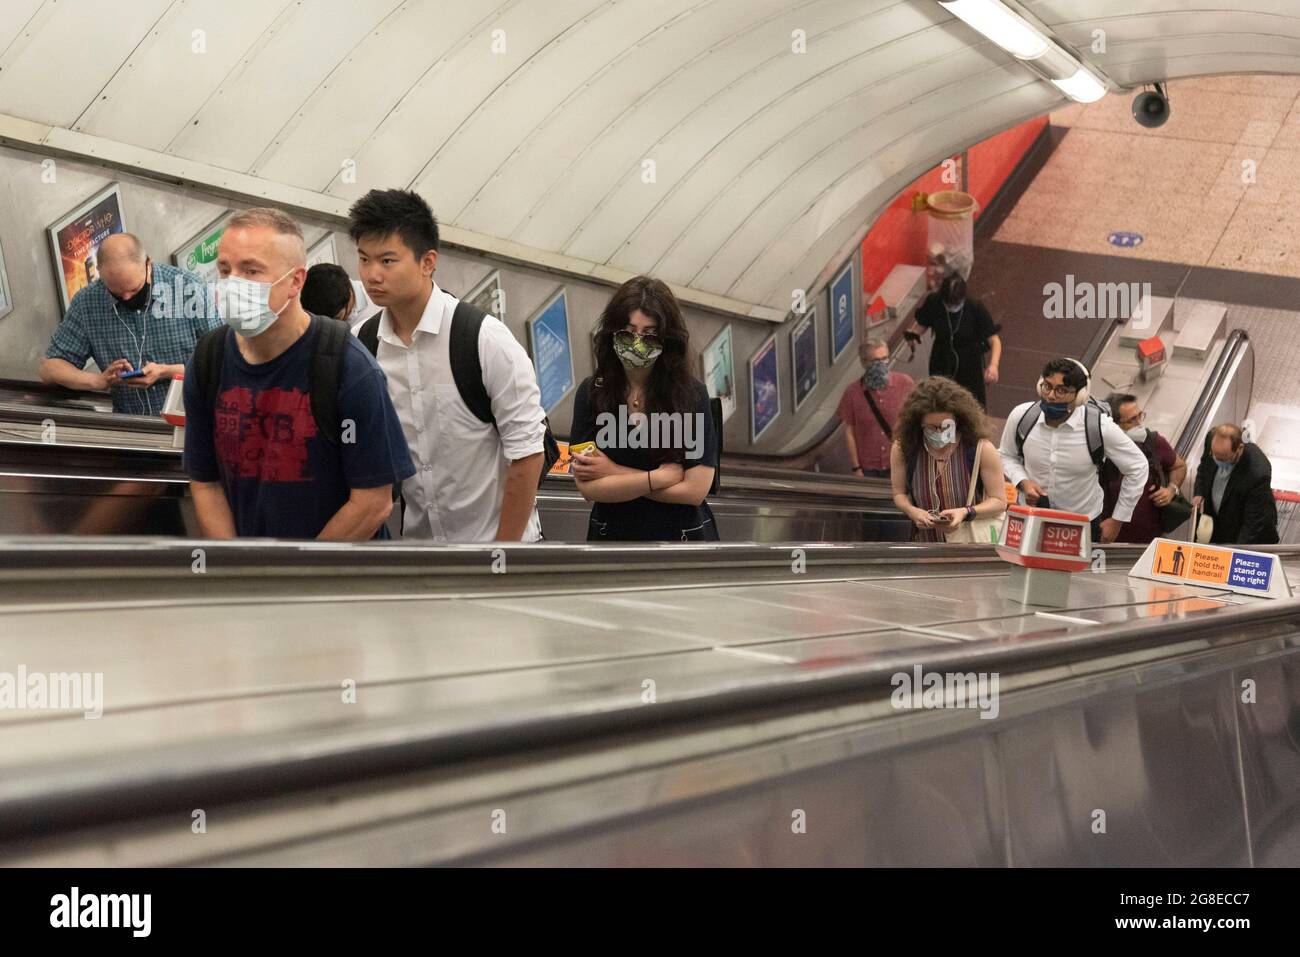 (210720) -- LONDON, 20. Juli 2021 (Xinhua) -- Passagiere laufen in einer U-Bahn-Station während der morgendlichen Hauptverkehrszeit in London, Großbritannien, am 19. Juli 2021. Als sich England am Montag in die letzte Phase der Aufhebung der COVID-19-Beschränkungen begab, im so genannten „Freedom Day“, erinnerten medizinische Experten die Öffentlichkeit an Vorsicht. Fast alle gesetzlichen Beschränkungen für den sozialen Kontakt wurden aufgehoben. Es gibt jetzt keine Grenzen mehr, wie viele Menschen sich treffen oder an Veranstaltungen teilnehmen können, Nachtklubs, die um Mitternacht wieder eröffnet werden, und Gesichtsbedeckungen werden in einigen Räumen empfohlen, aber nicht gesetzlich vorgeschrieben. (Foto von Ray Stockfoto